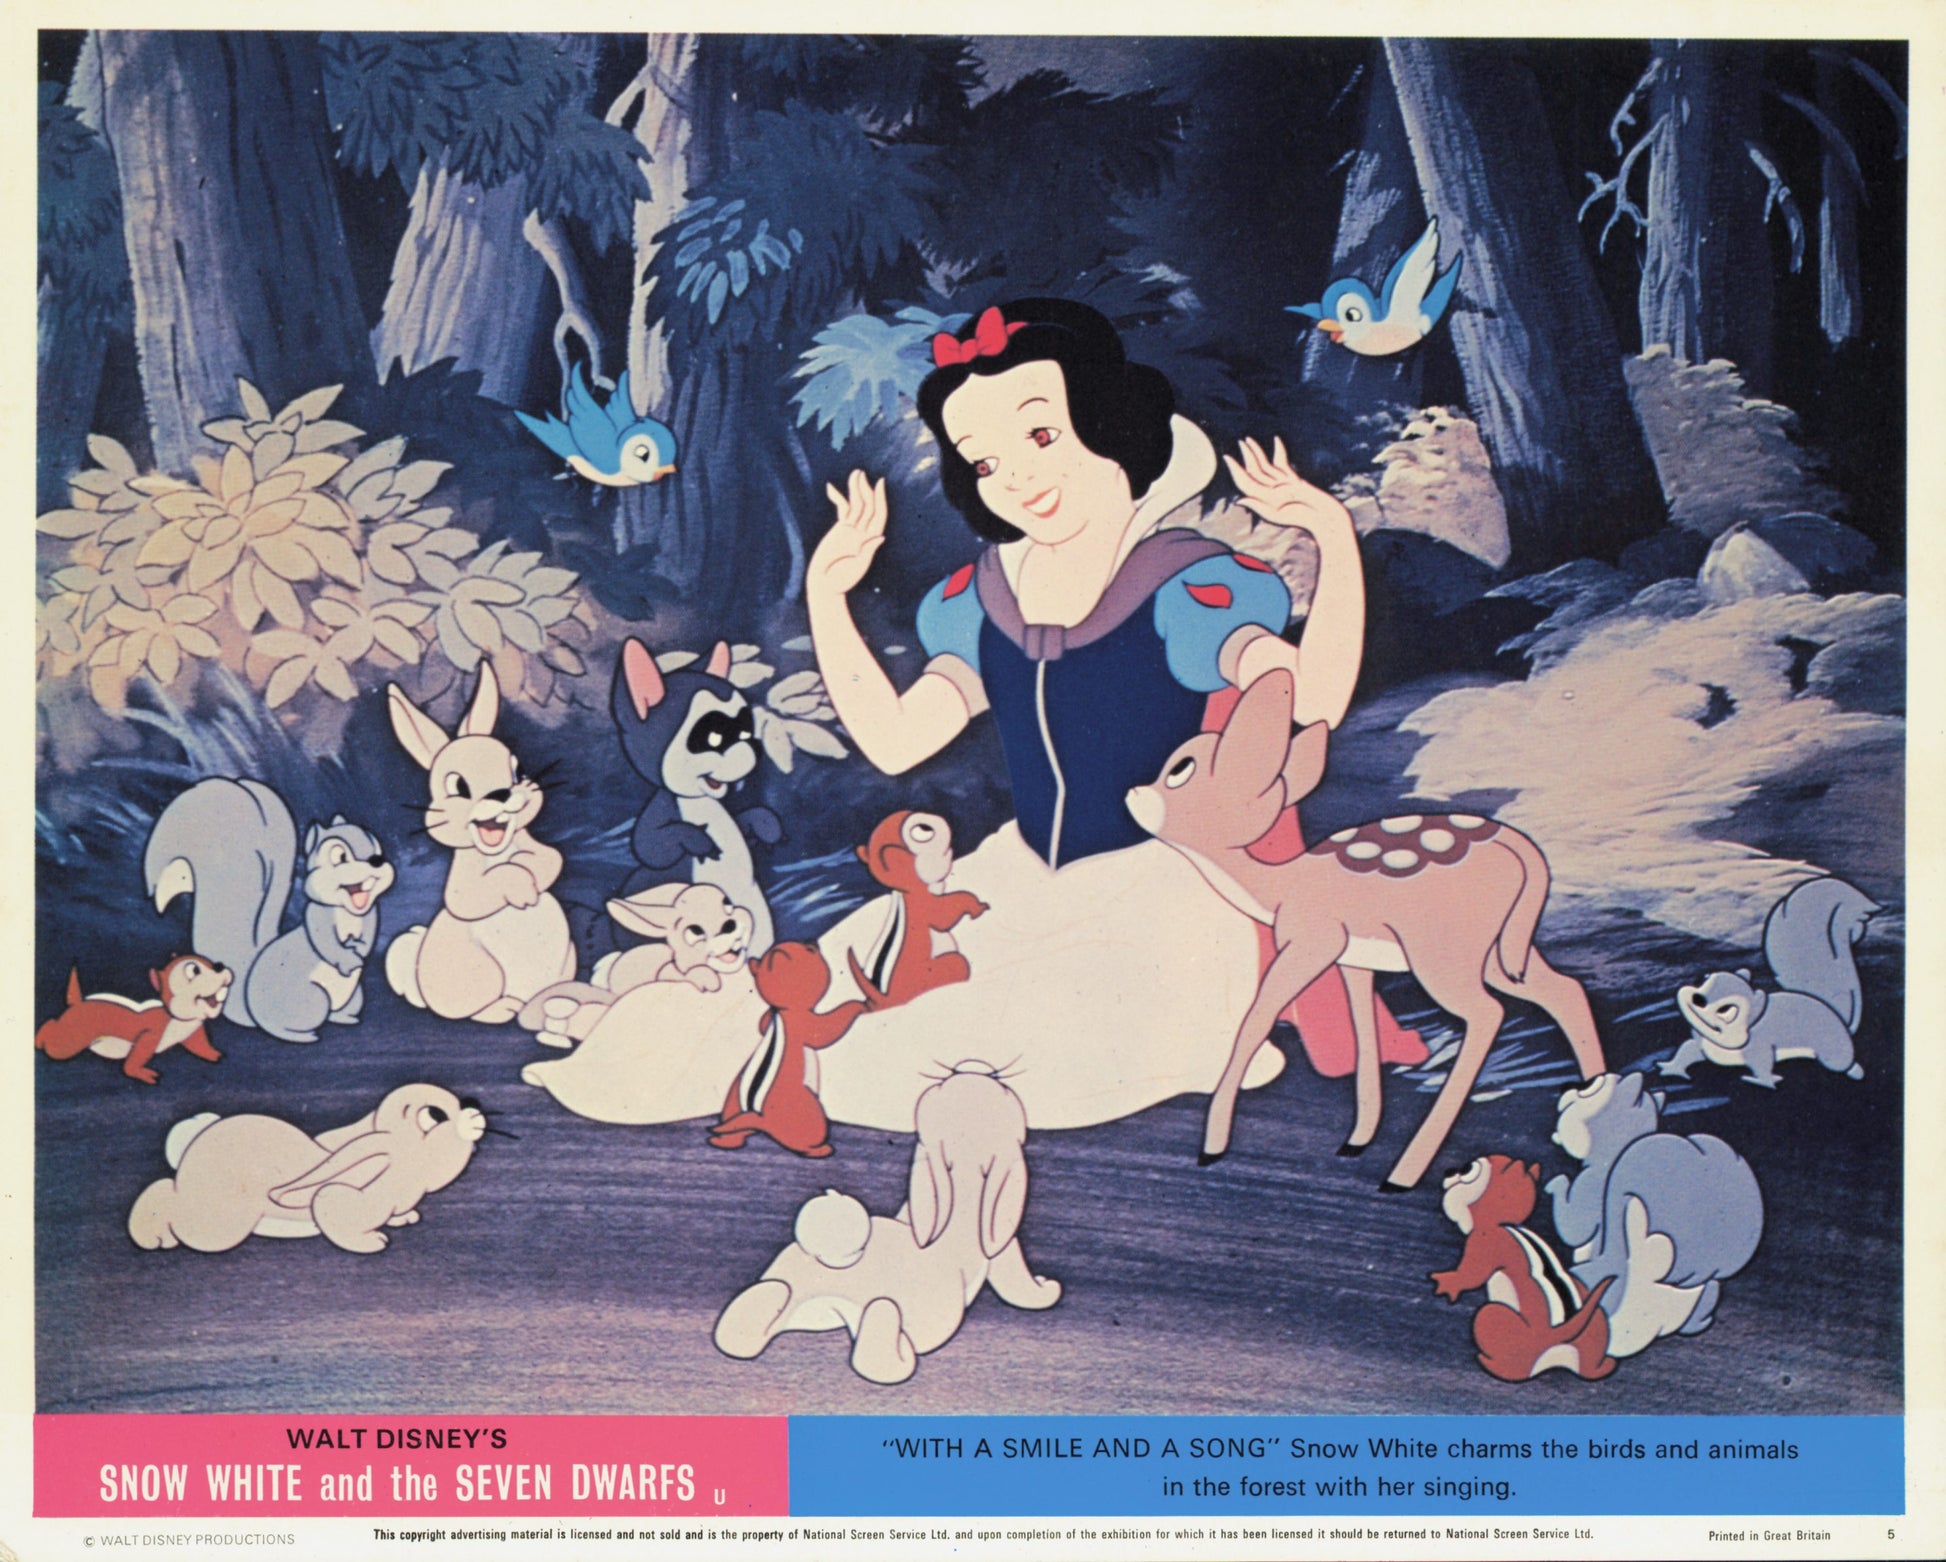 Snow White and the Seven Dwarfs (1937) Studio Photos (6 vintage prints) Animation Disney Film Movies Walt Disney